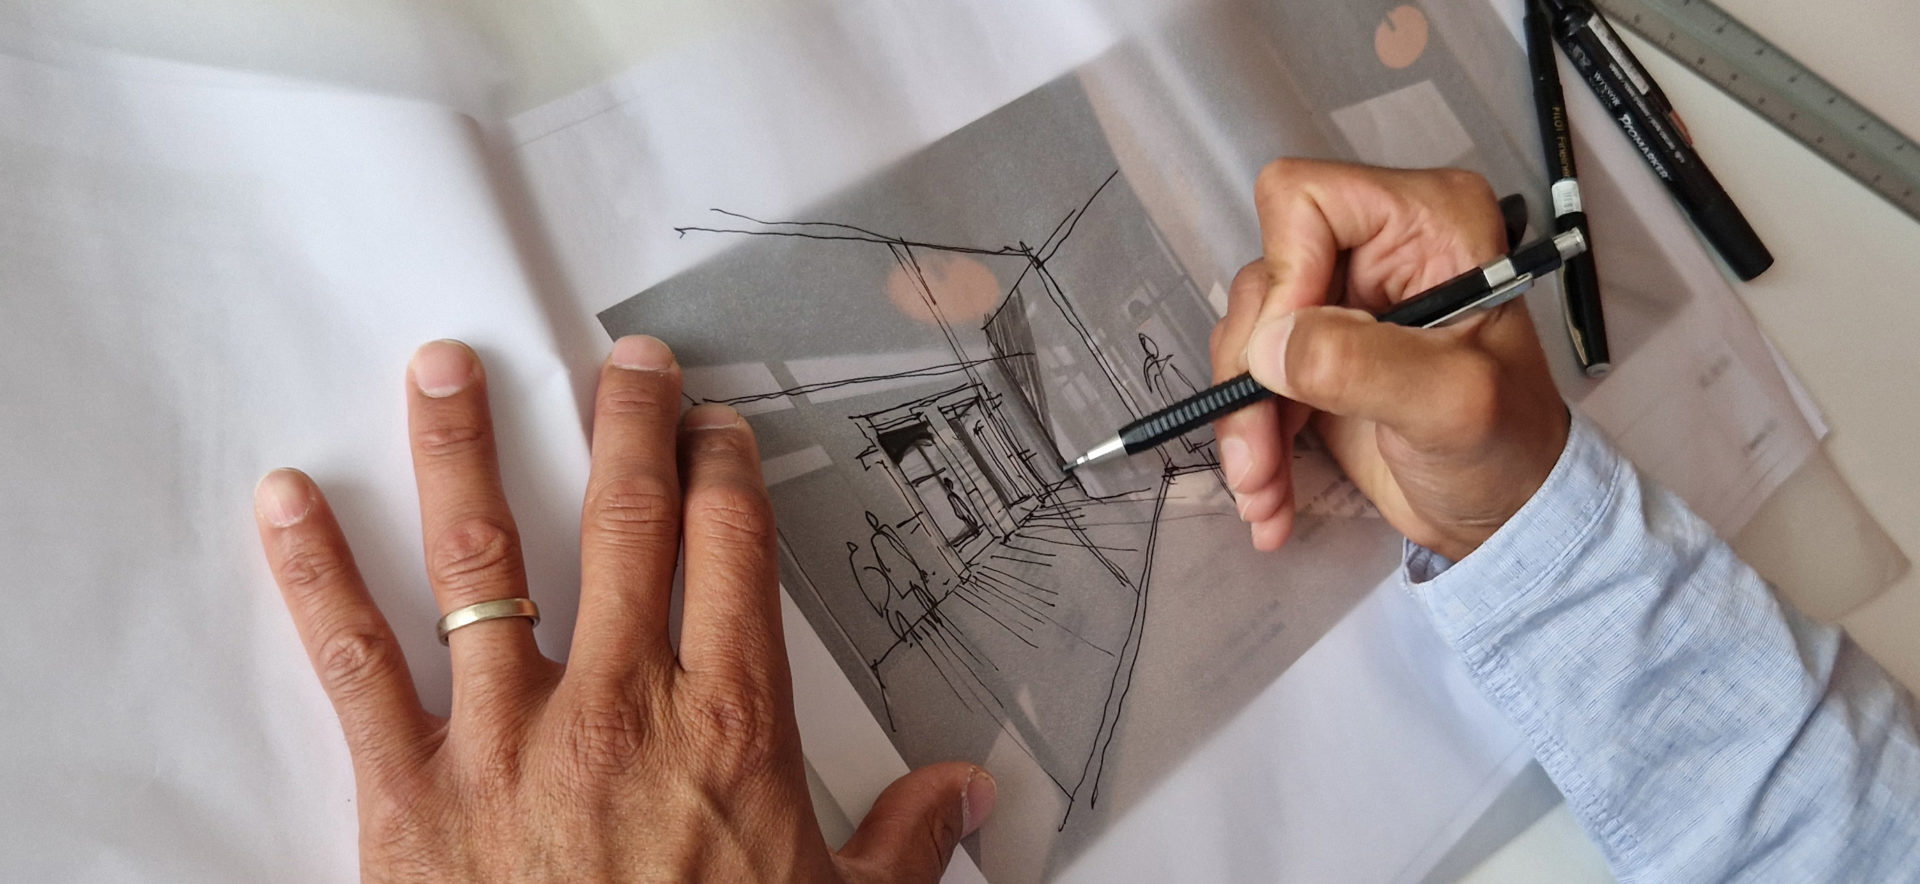 Axe Architecture - Agence d'architecture à Lyon - Photo de mains dessinant un croquis